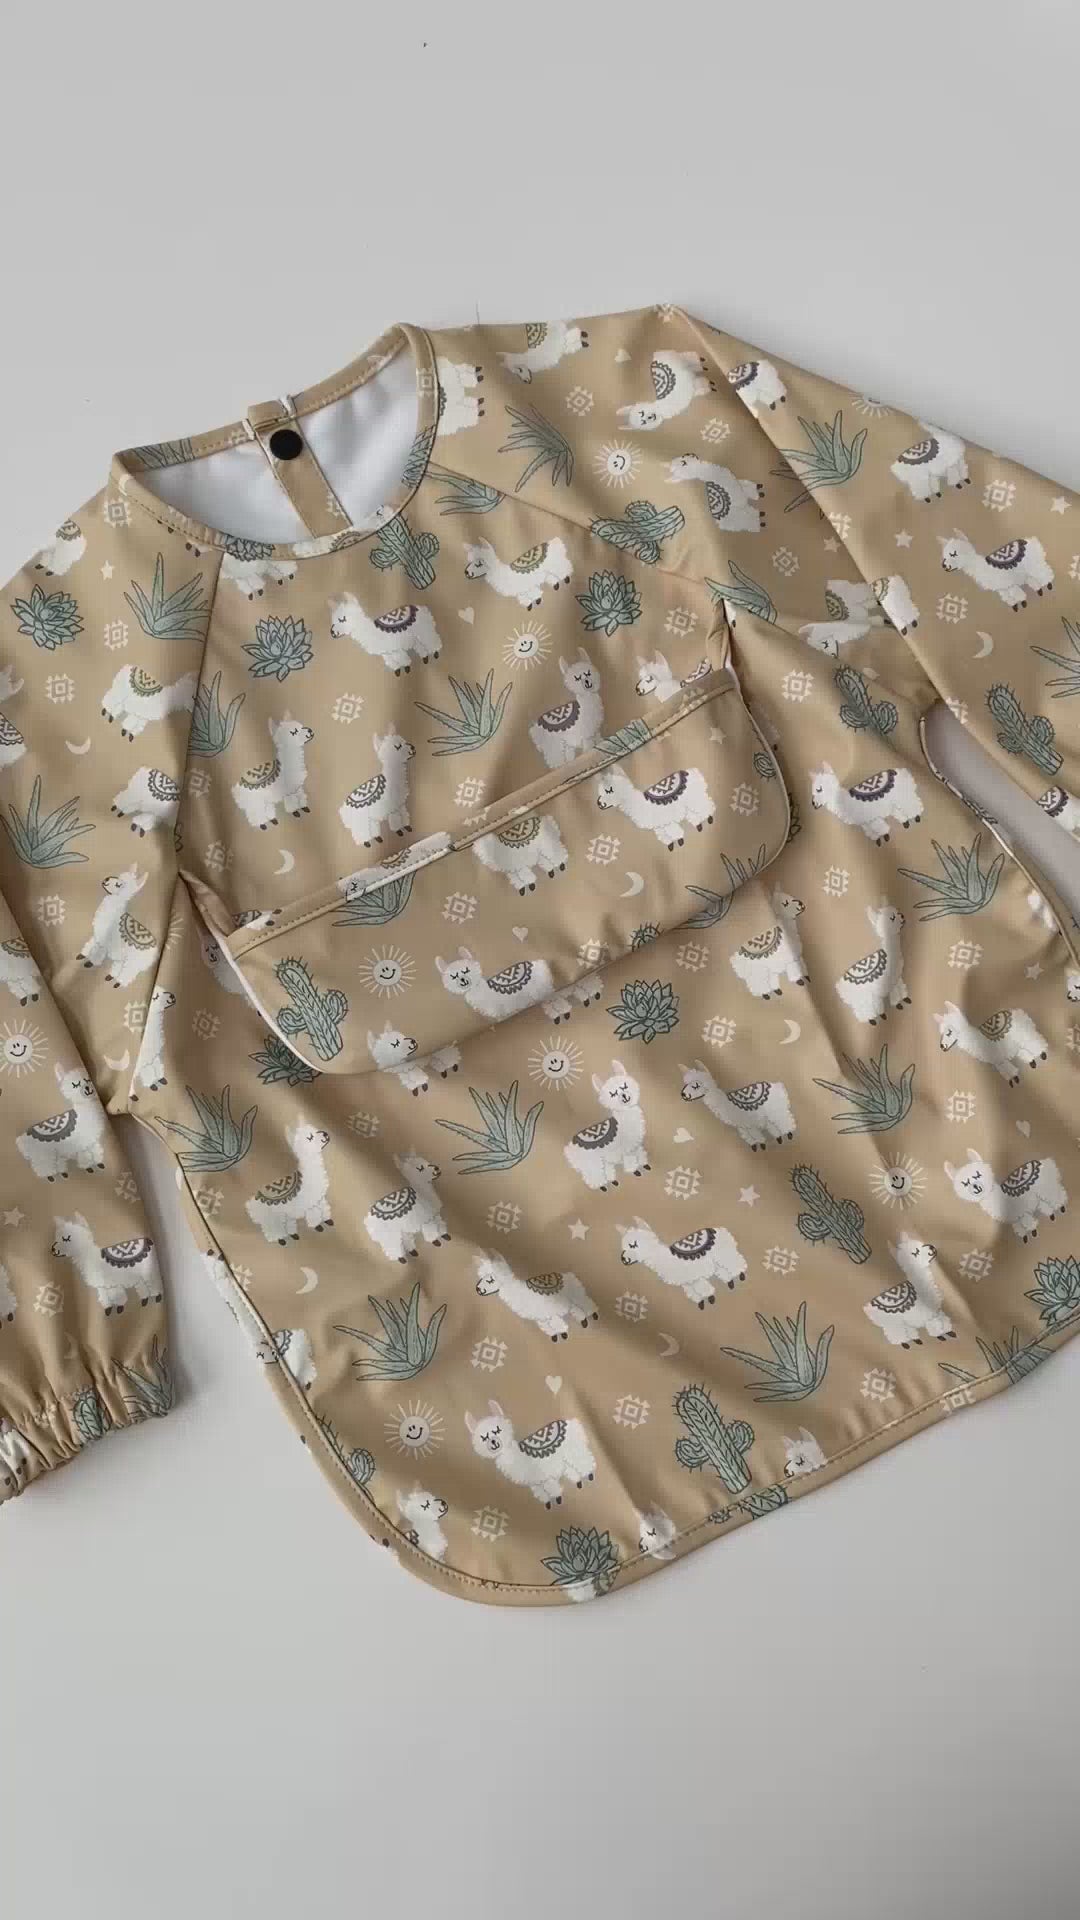 Waterproof Bib Apron with long sleeves and pocket: Sunny llamas